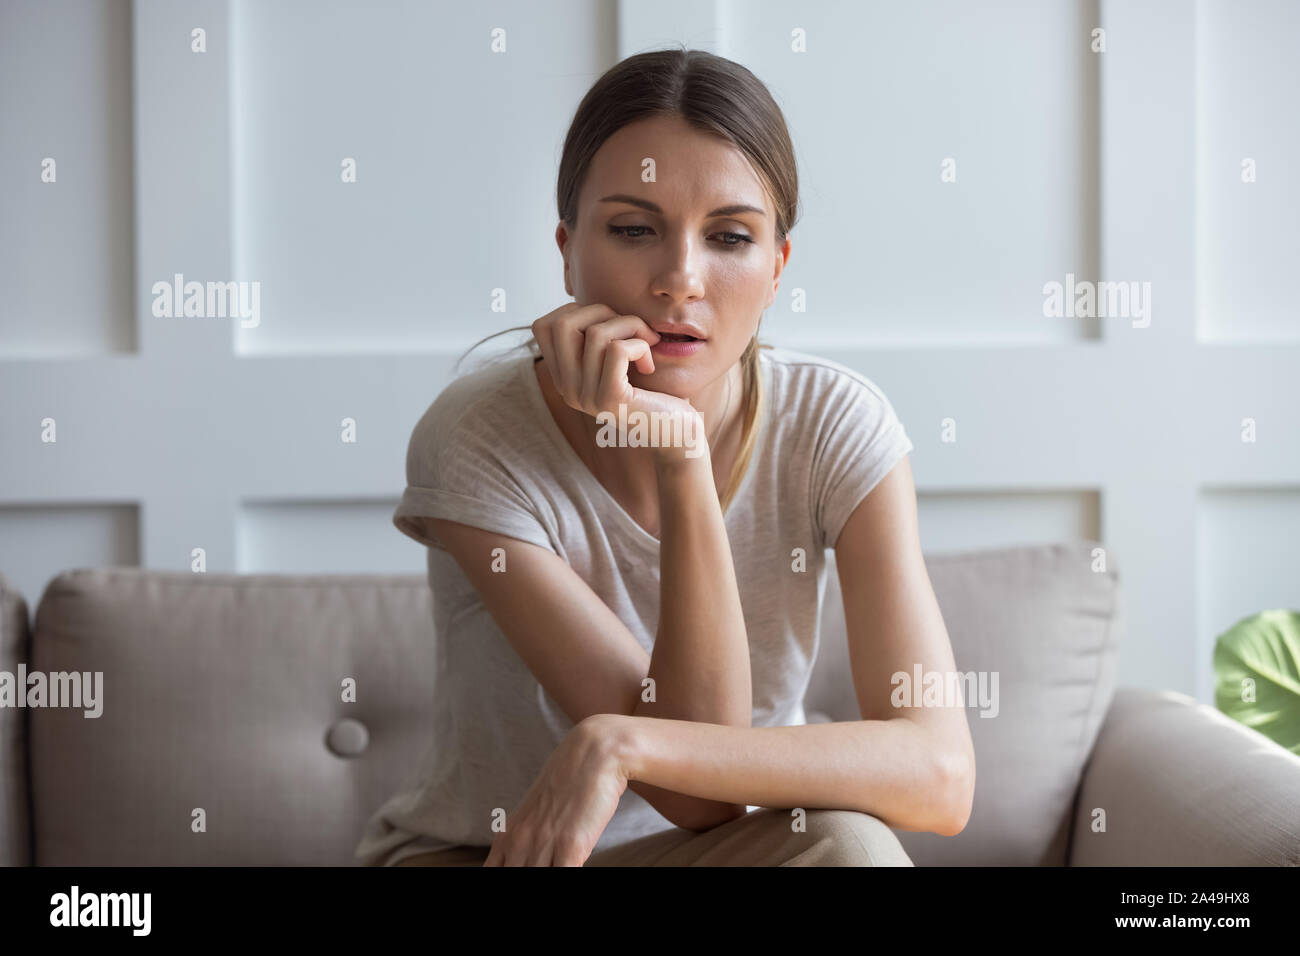 Perdu sur les tristes pensées woman sitting on sofa at home Banque D'Images